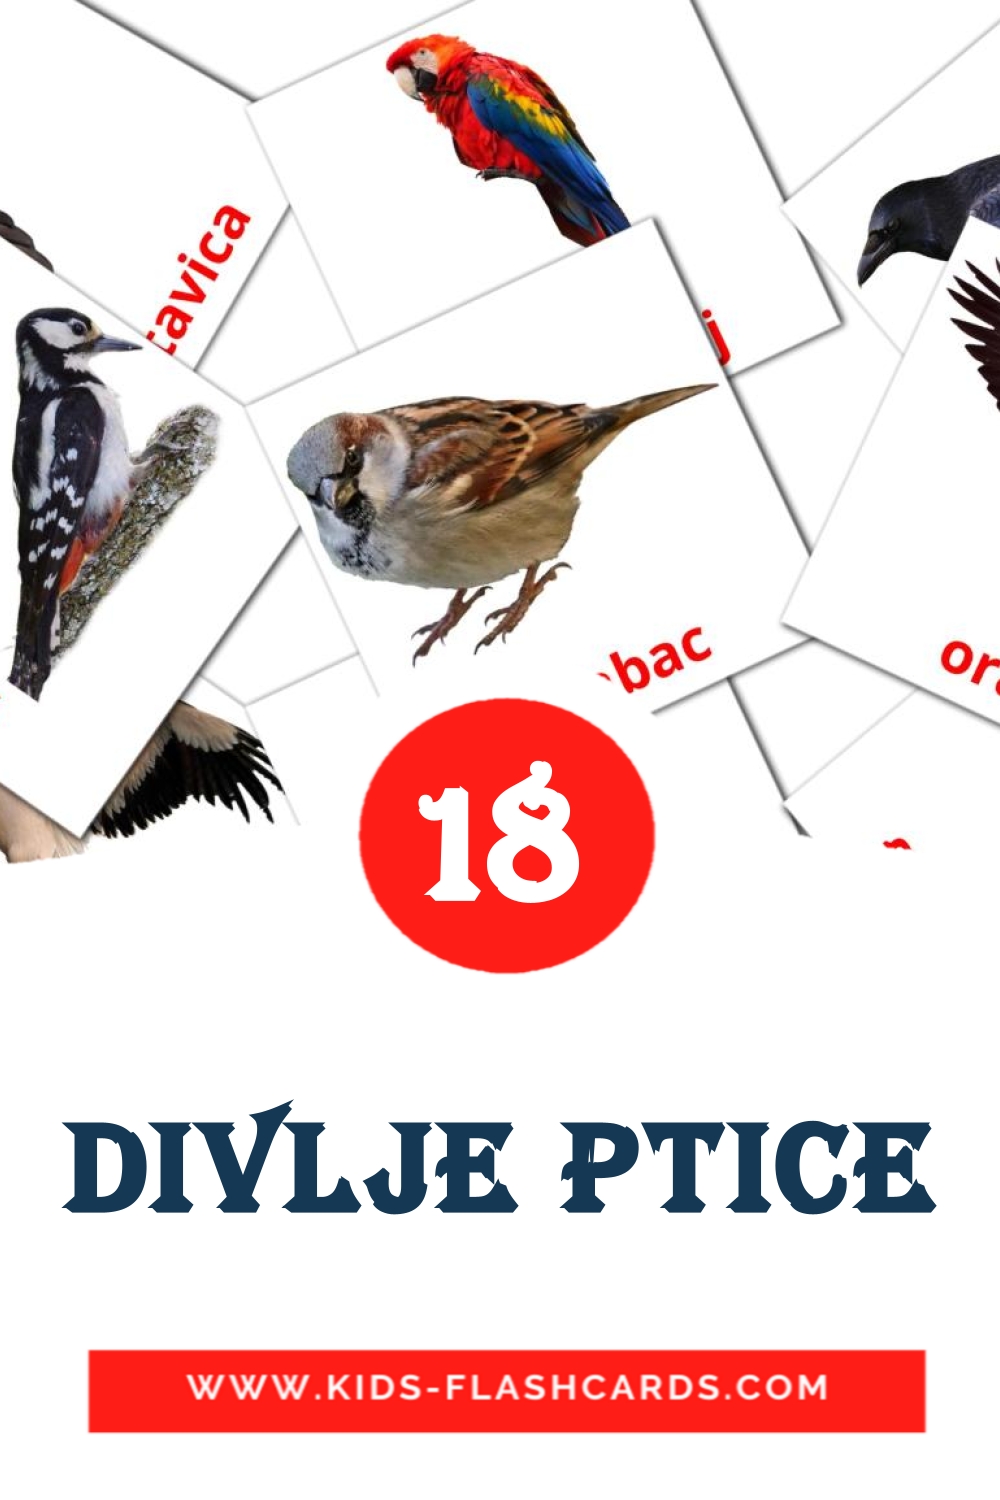 Divlje ptice на сербском для Детского Сада (18 карточек)